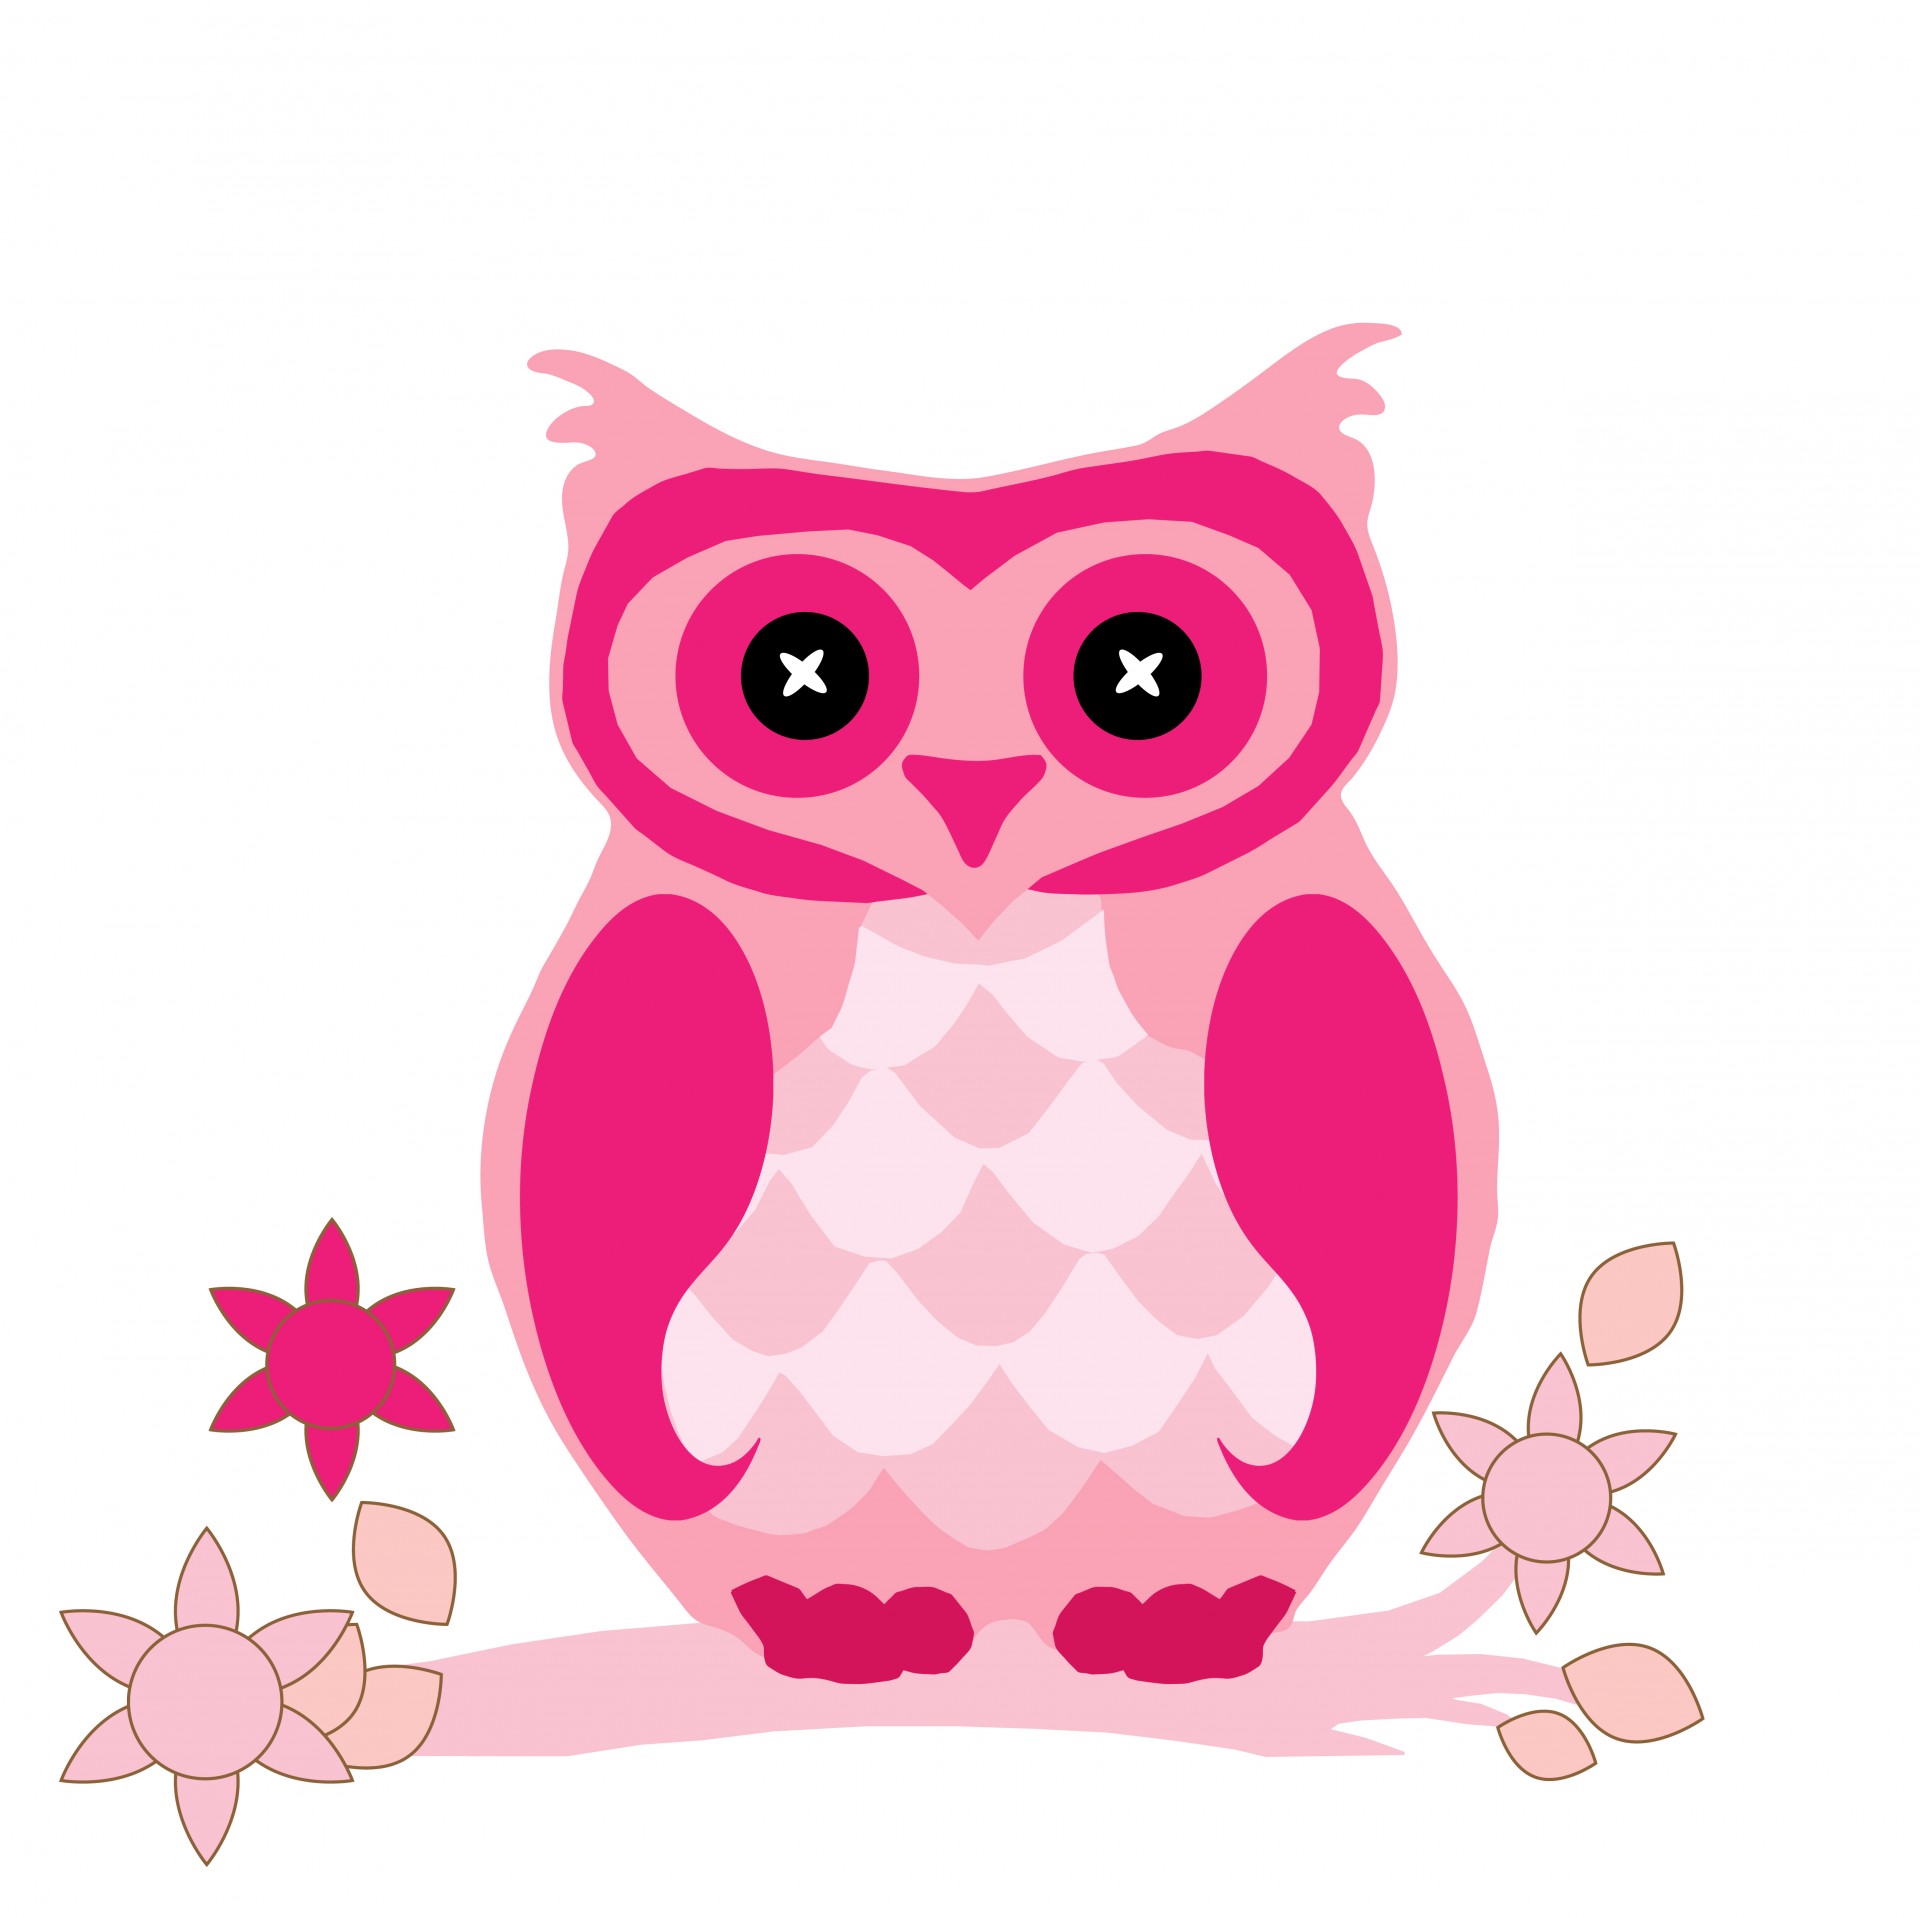 Cute Math Owl Clipart   Cliparthut   Free Clipart